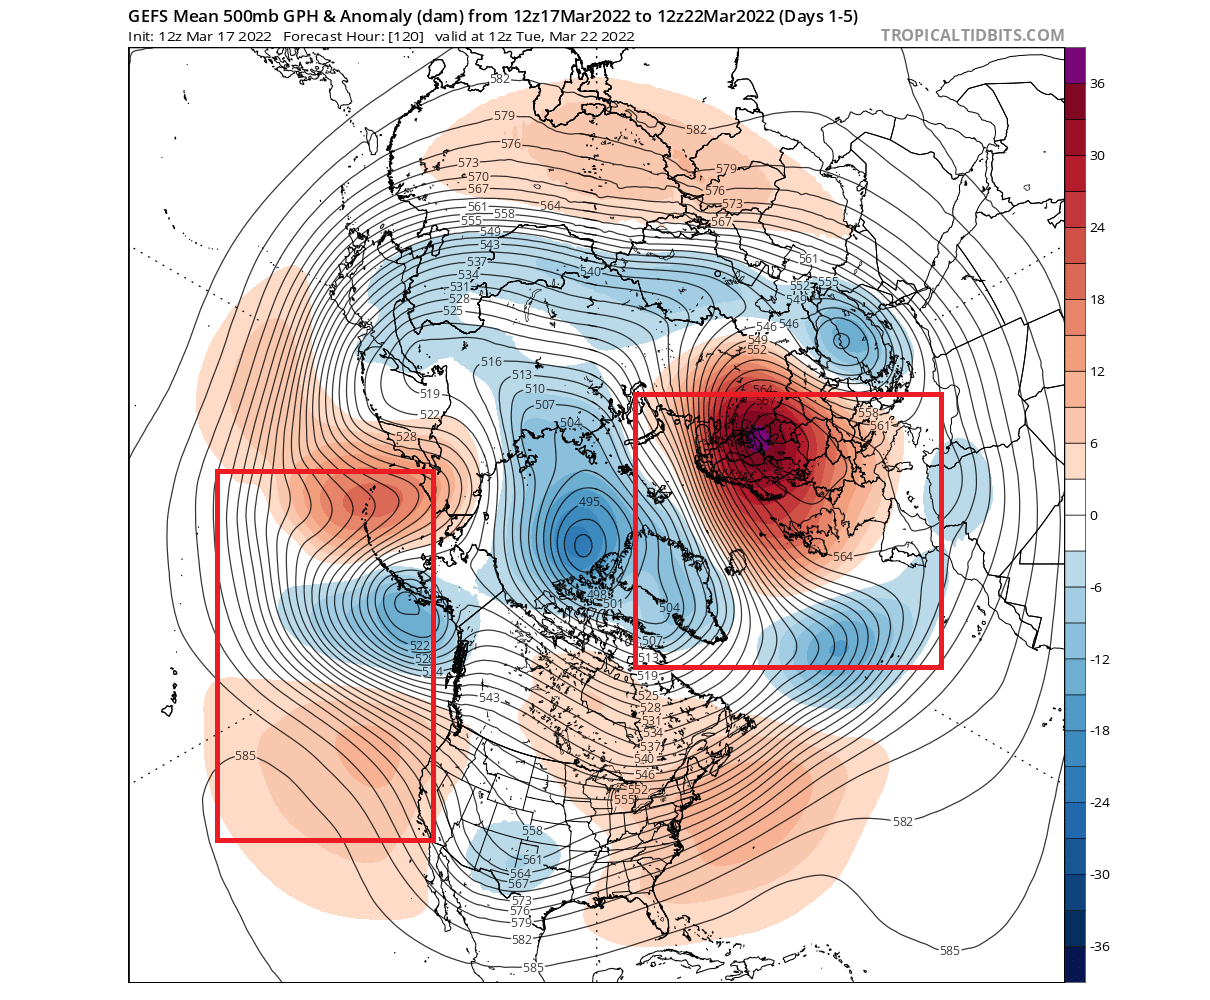 polar-vortex-collapse-forecast-update-spring-march-mid-month-north-hemisphere-pressure-pattern-weather-polar-vortex-ecmwf